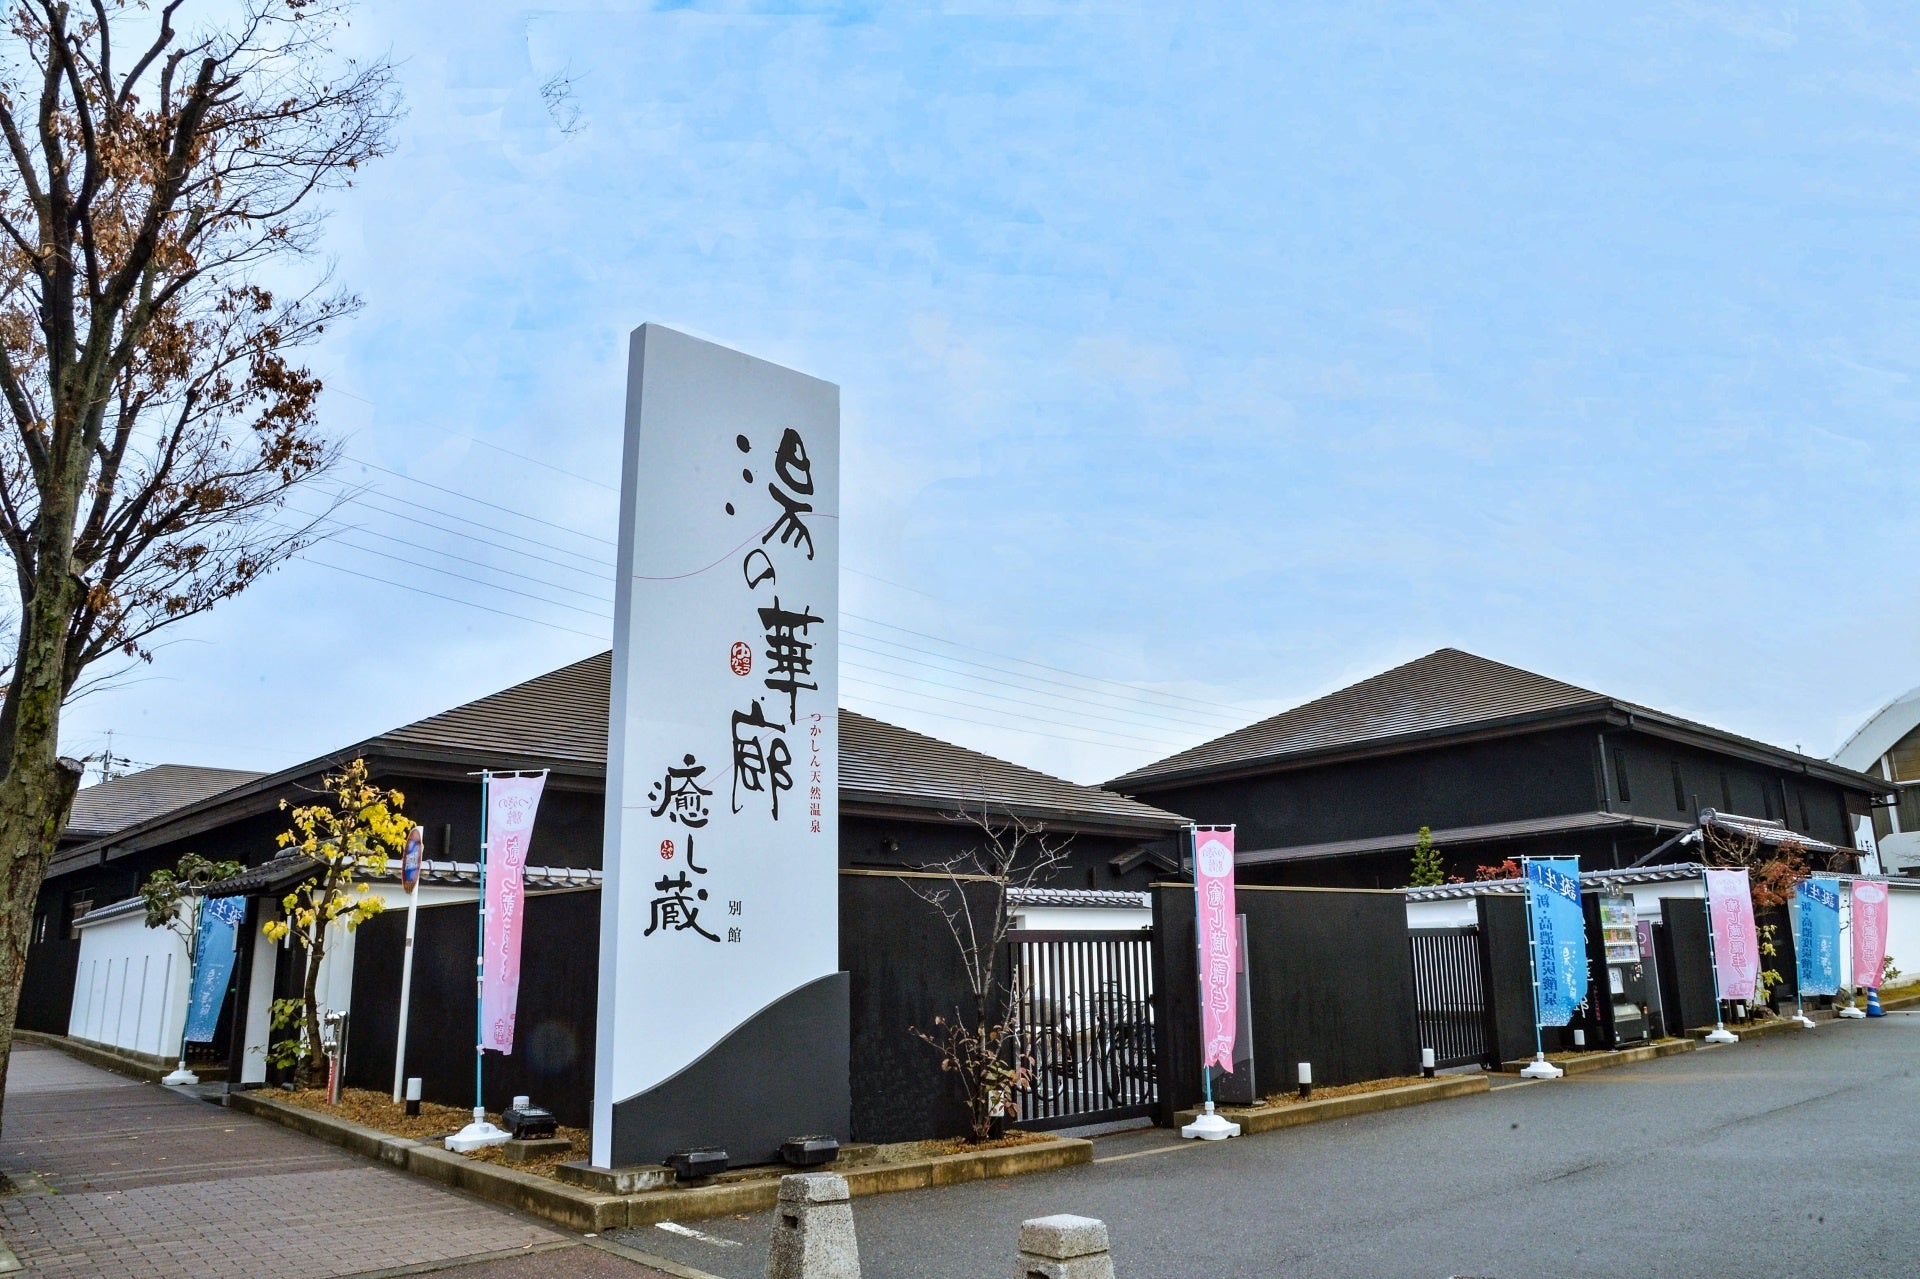 那須高原 TOWA ピュアコテージ内に建つ当社施工の貸別荘に日本最大級のプライベートドッグランがオープン